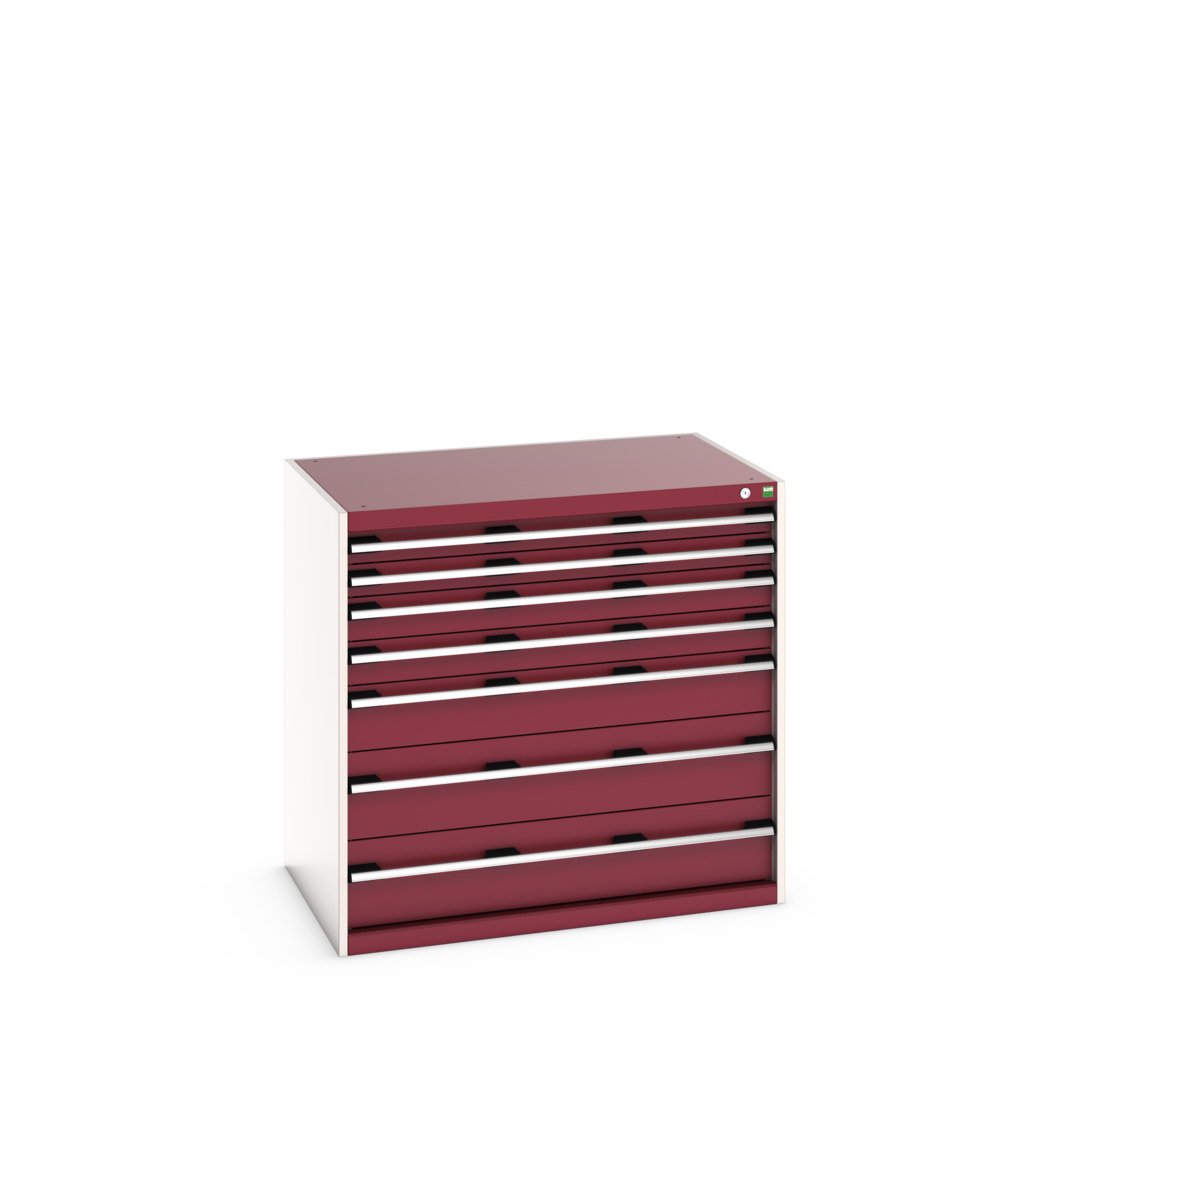 40029022.24V - cubio drawer cabinet